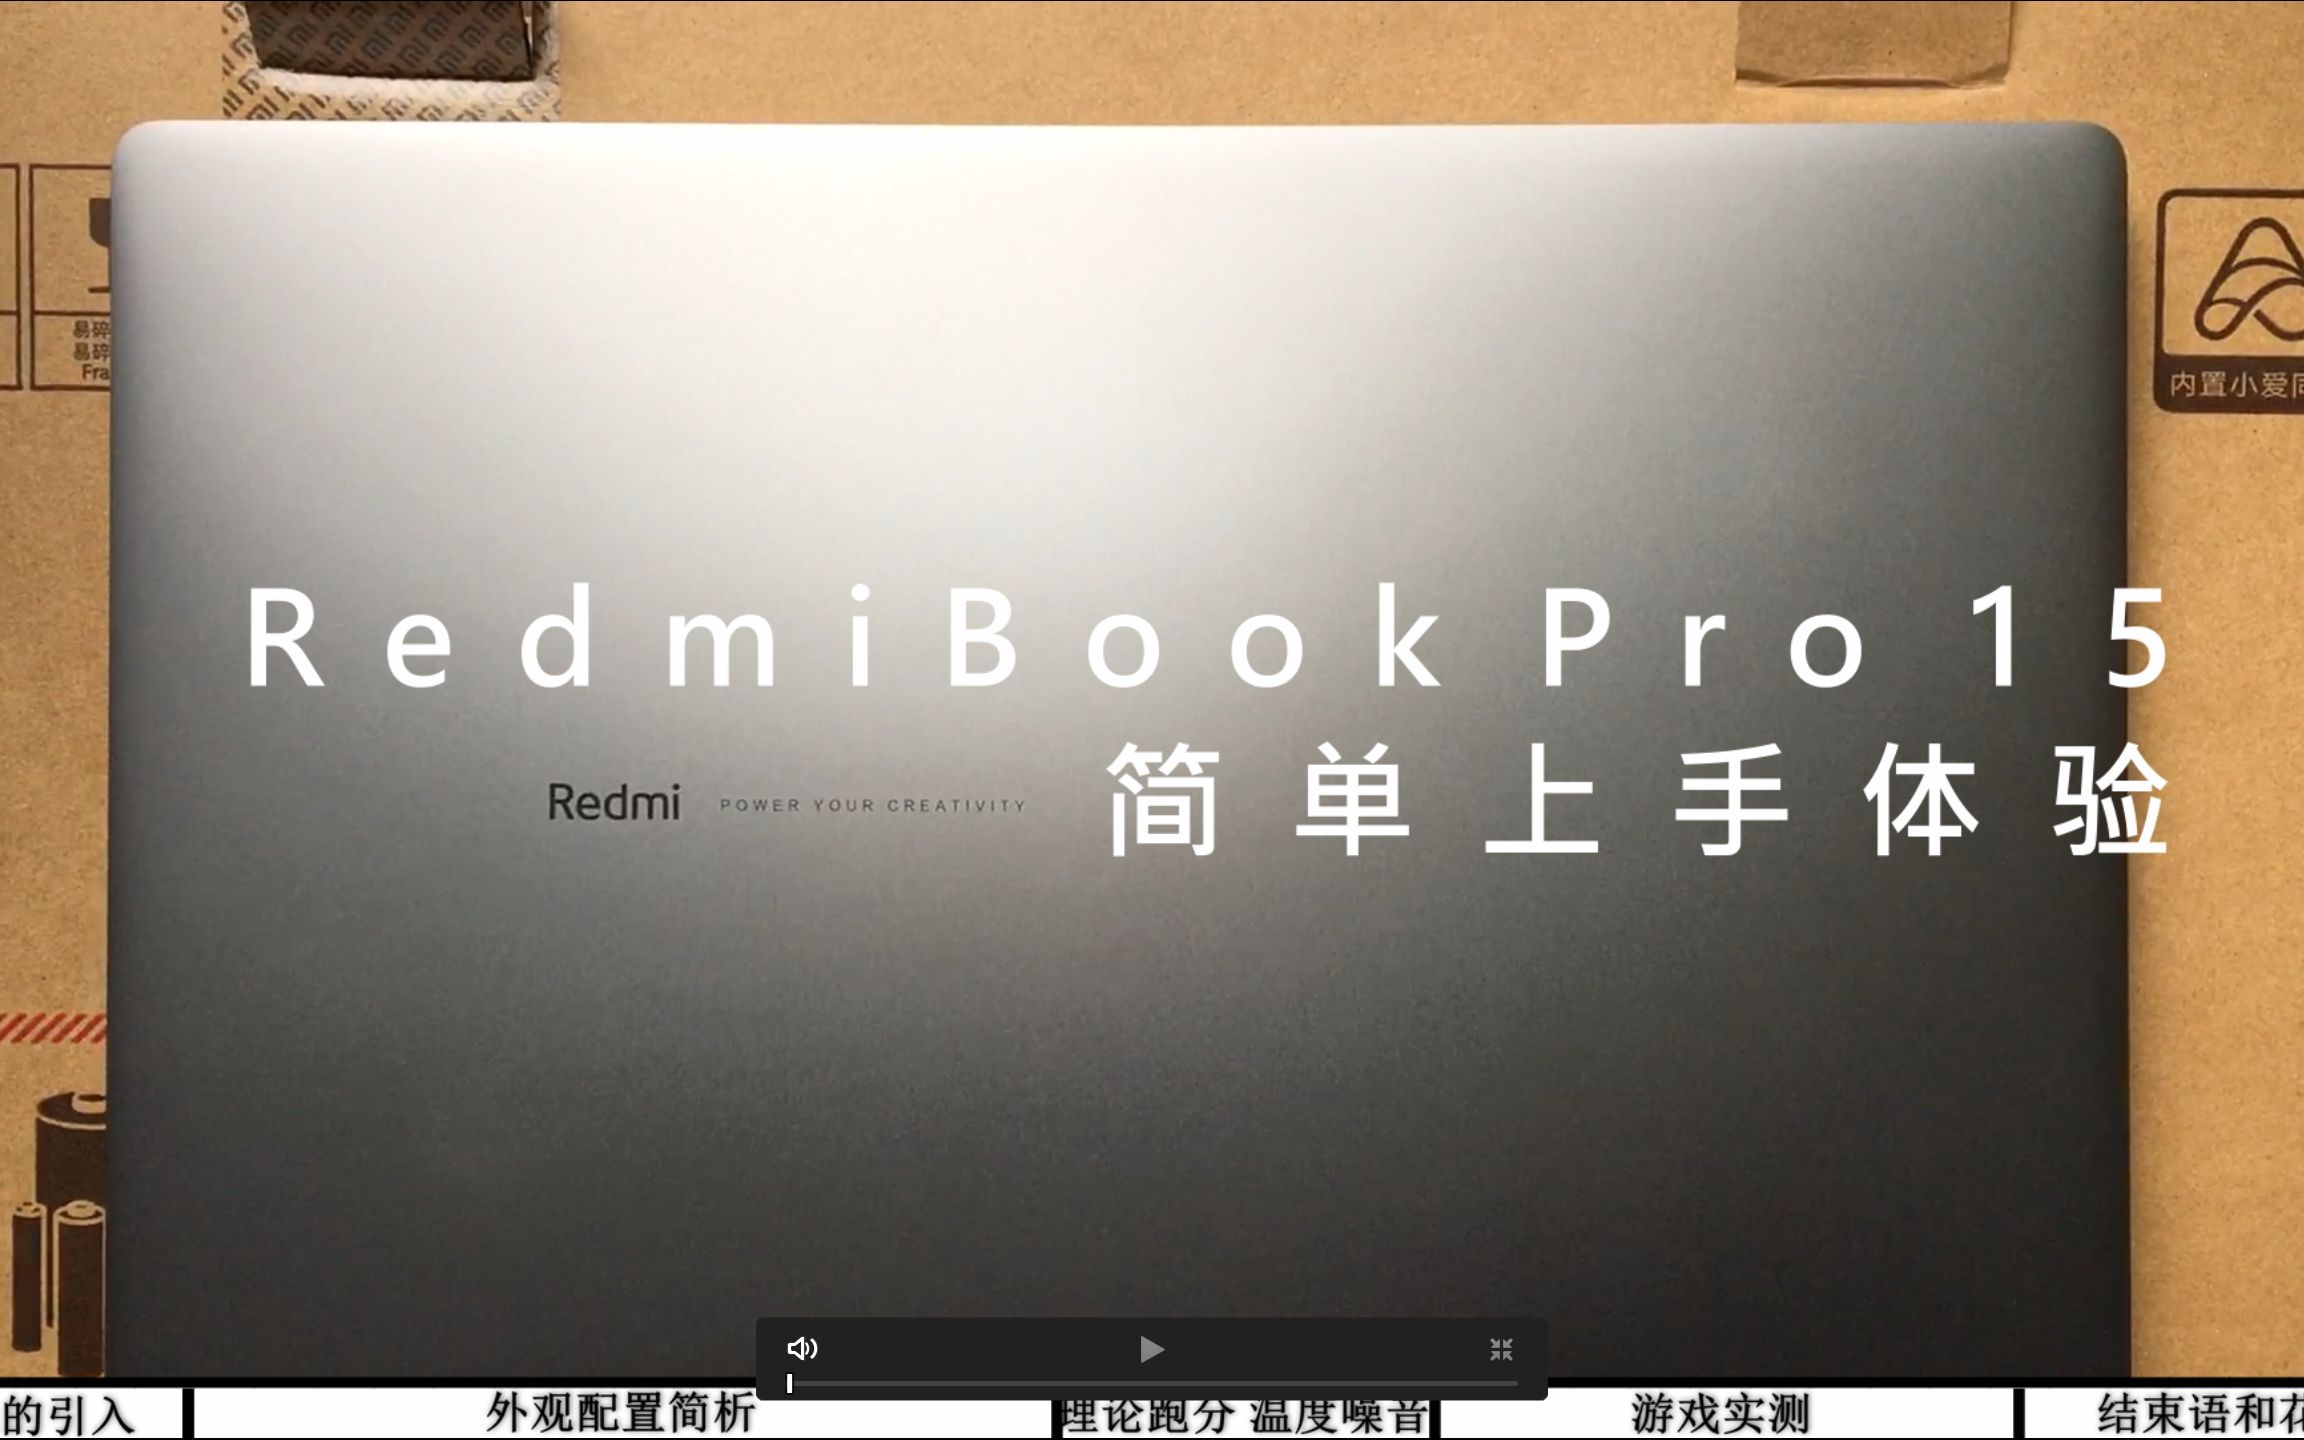 我偏要用商务轻薄本打游戏——RedmiBookPro15简单上手体验